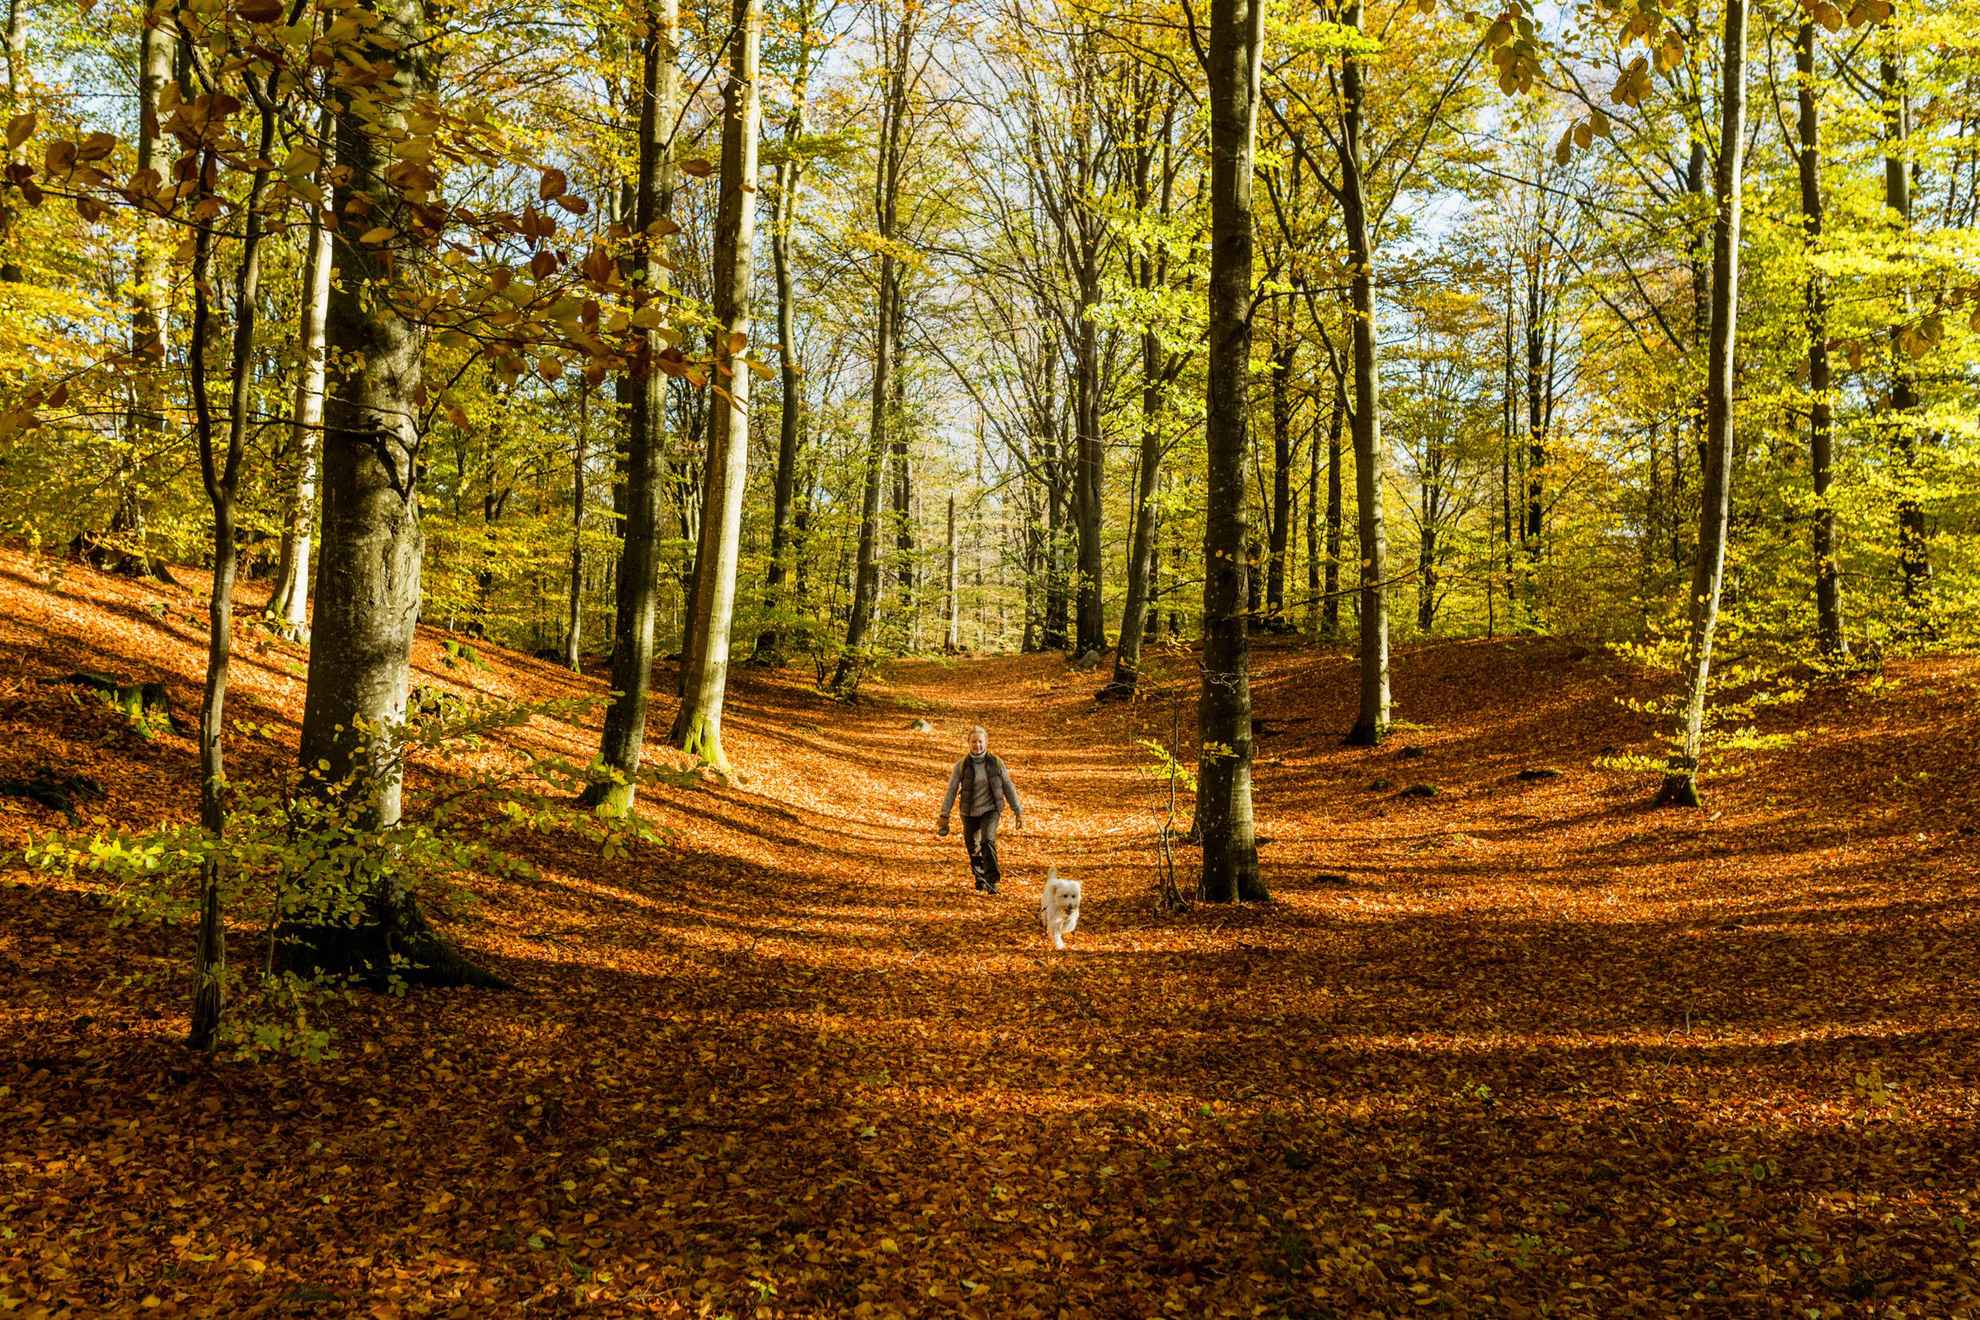 Een vrouw met een hond wandelt in de herfst op een pad in een bos. De zon schijnt en de grond is bedekt met oranje bladeren.